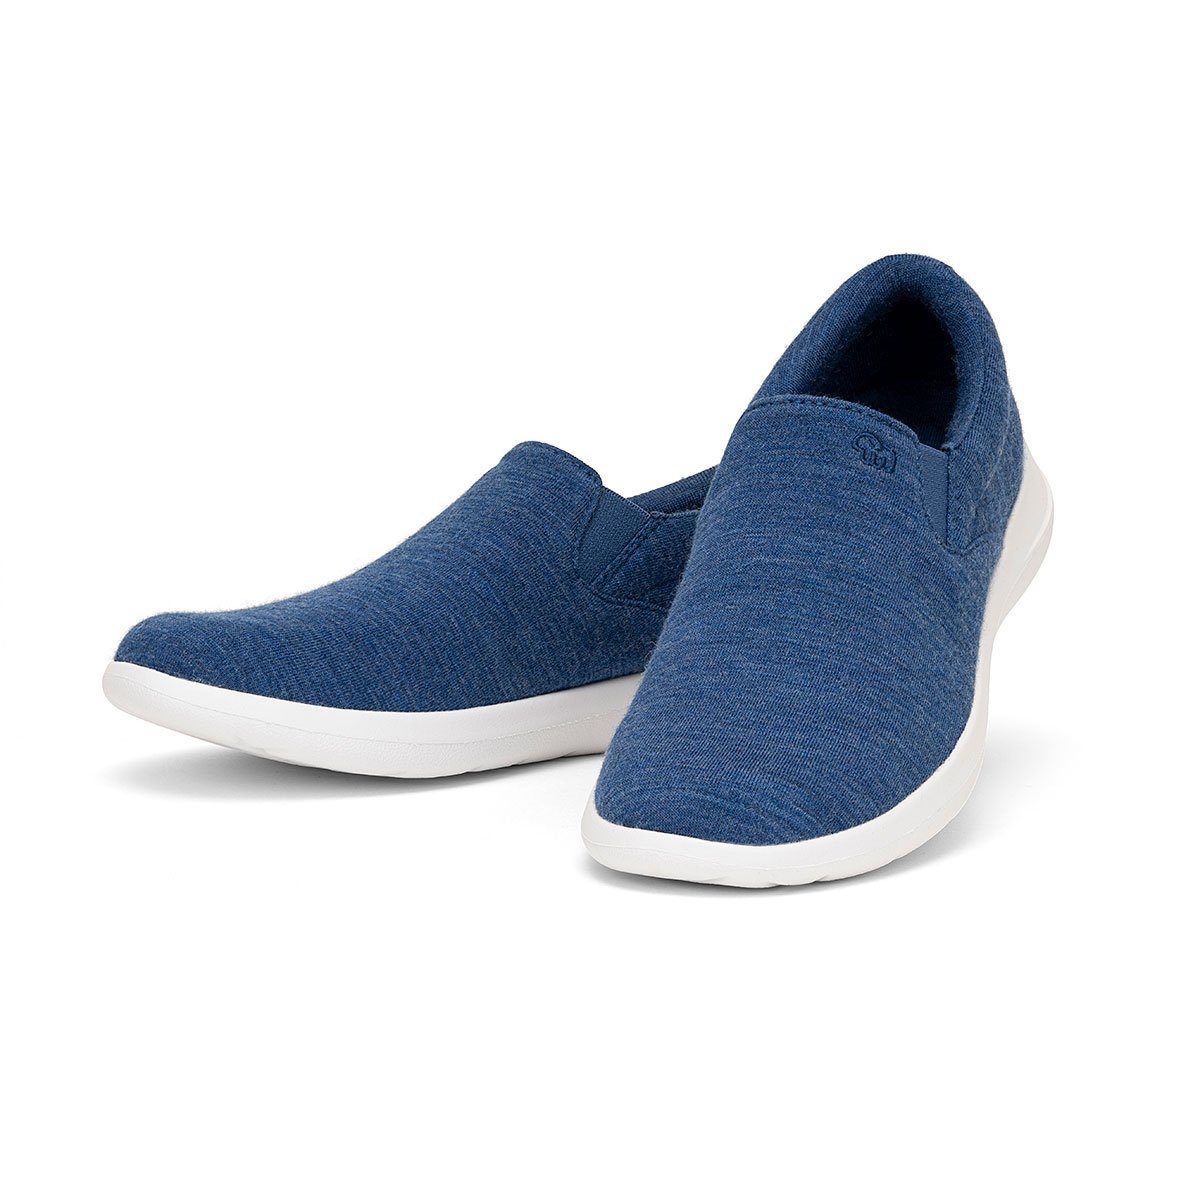 merinos - merinoshoes.de Atmungsaktiver Damenschuh aus Merinowolle Sneaker Eleganter blauer Schuh mit Slip-On Funktion